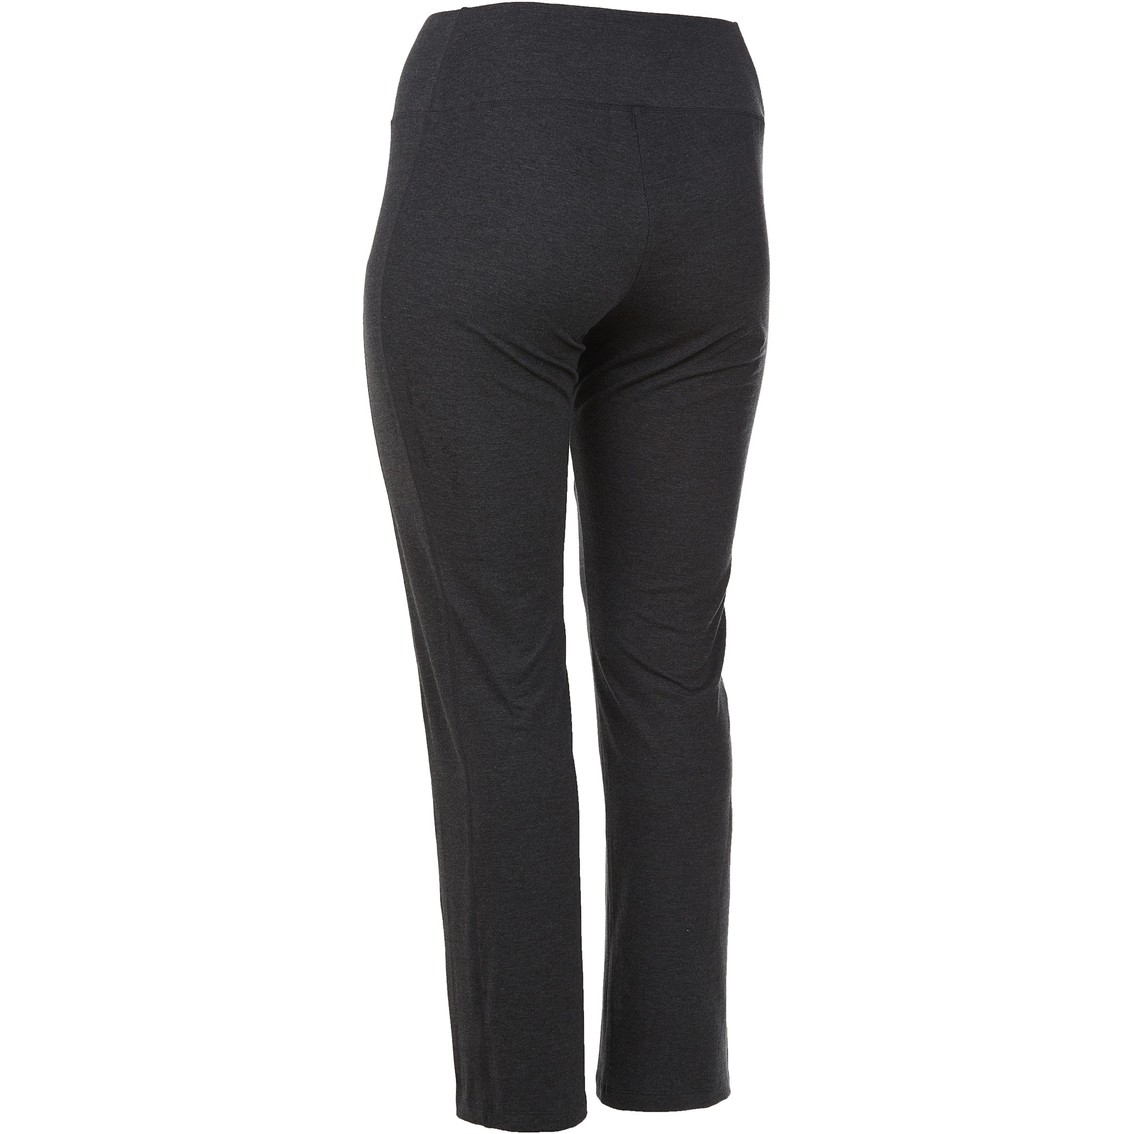 Pbx Pro Plus Size Cotton Pocket Pants | Pants & Capris | Clothing ...